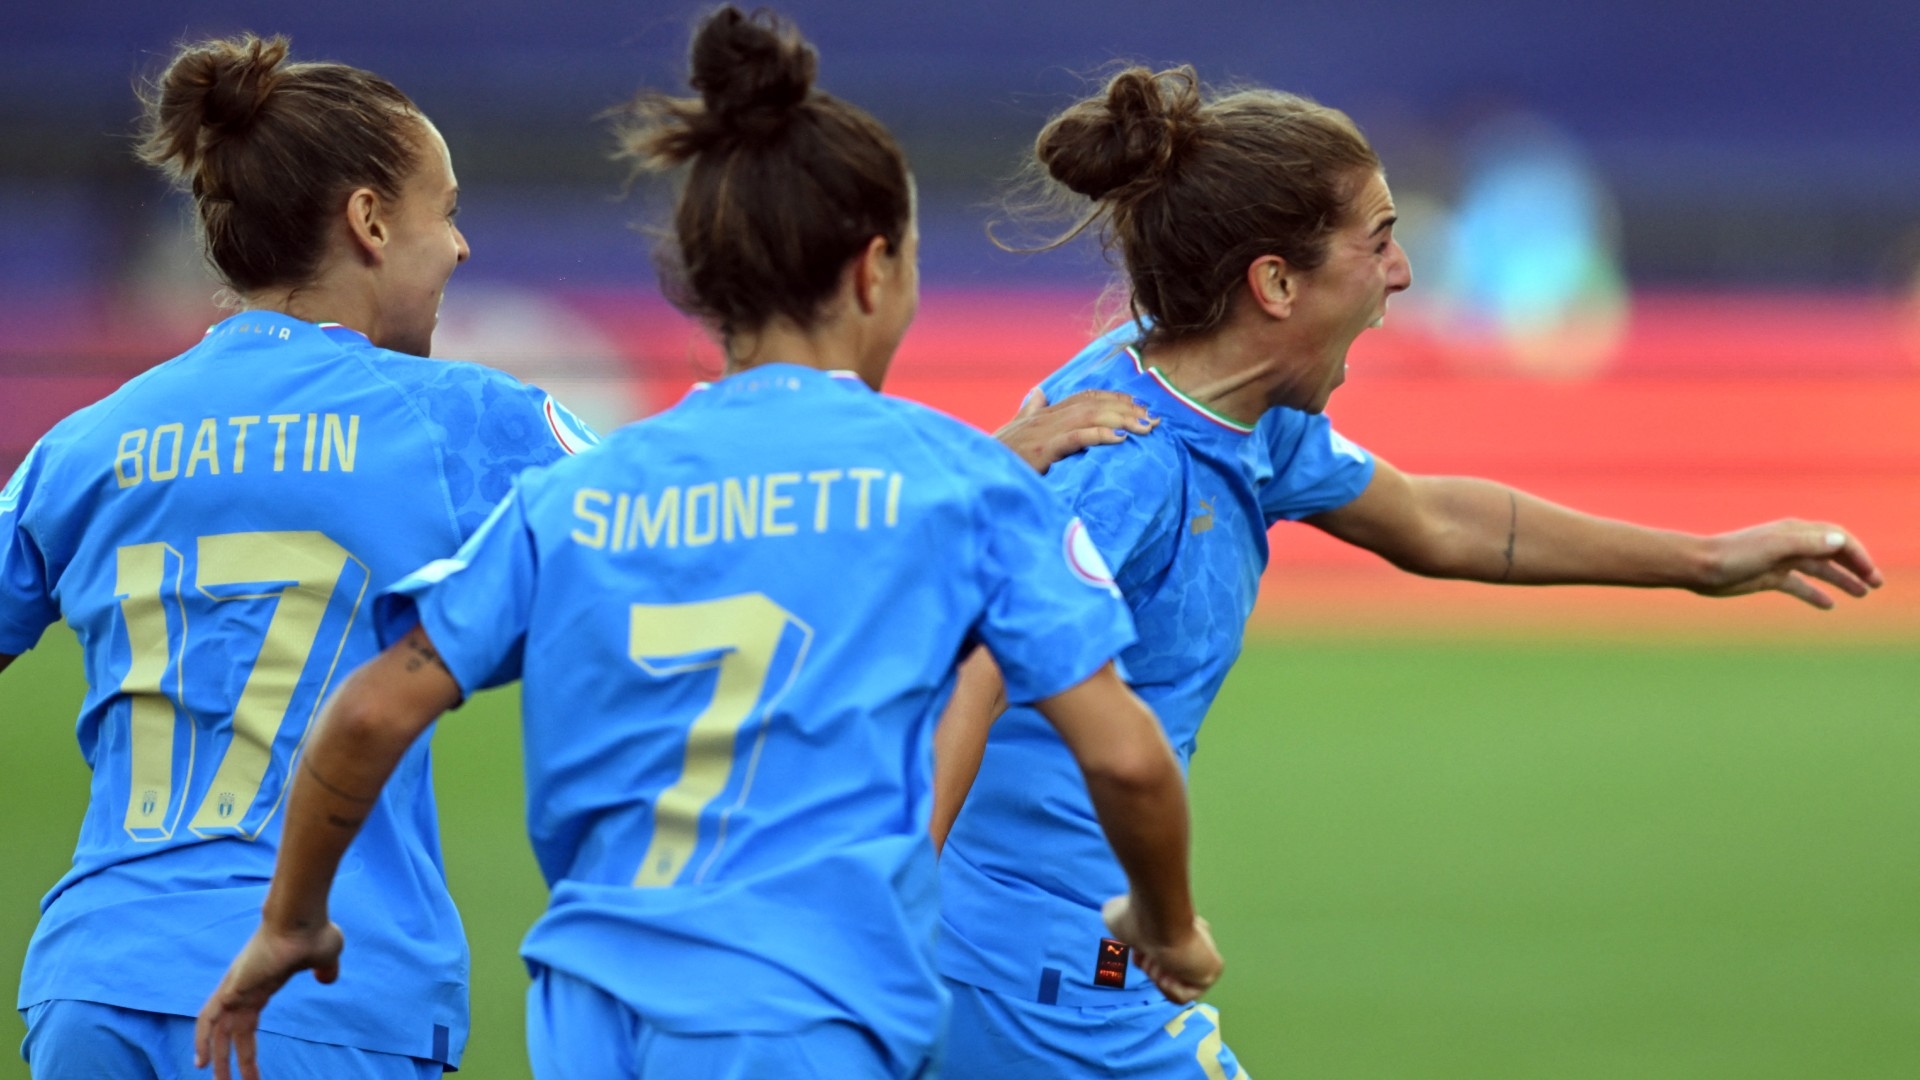 Europei donne, Italia-Islanda 1-1. Le Azzurre sperano